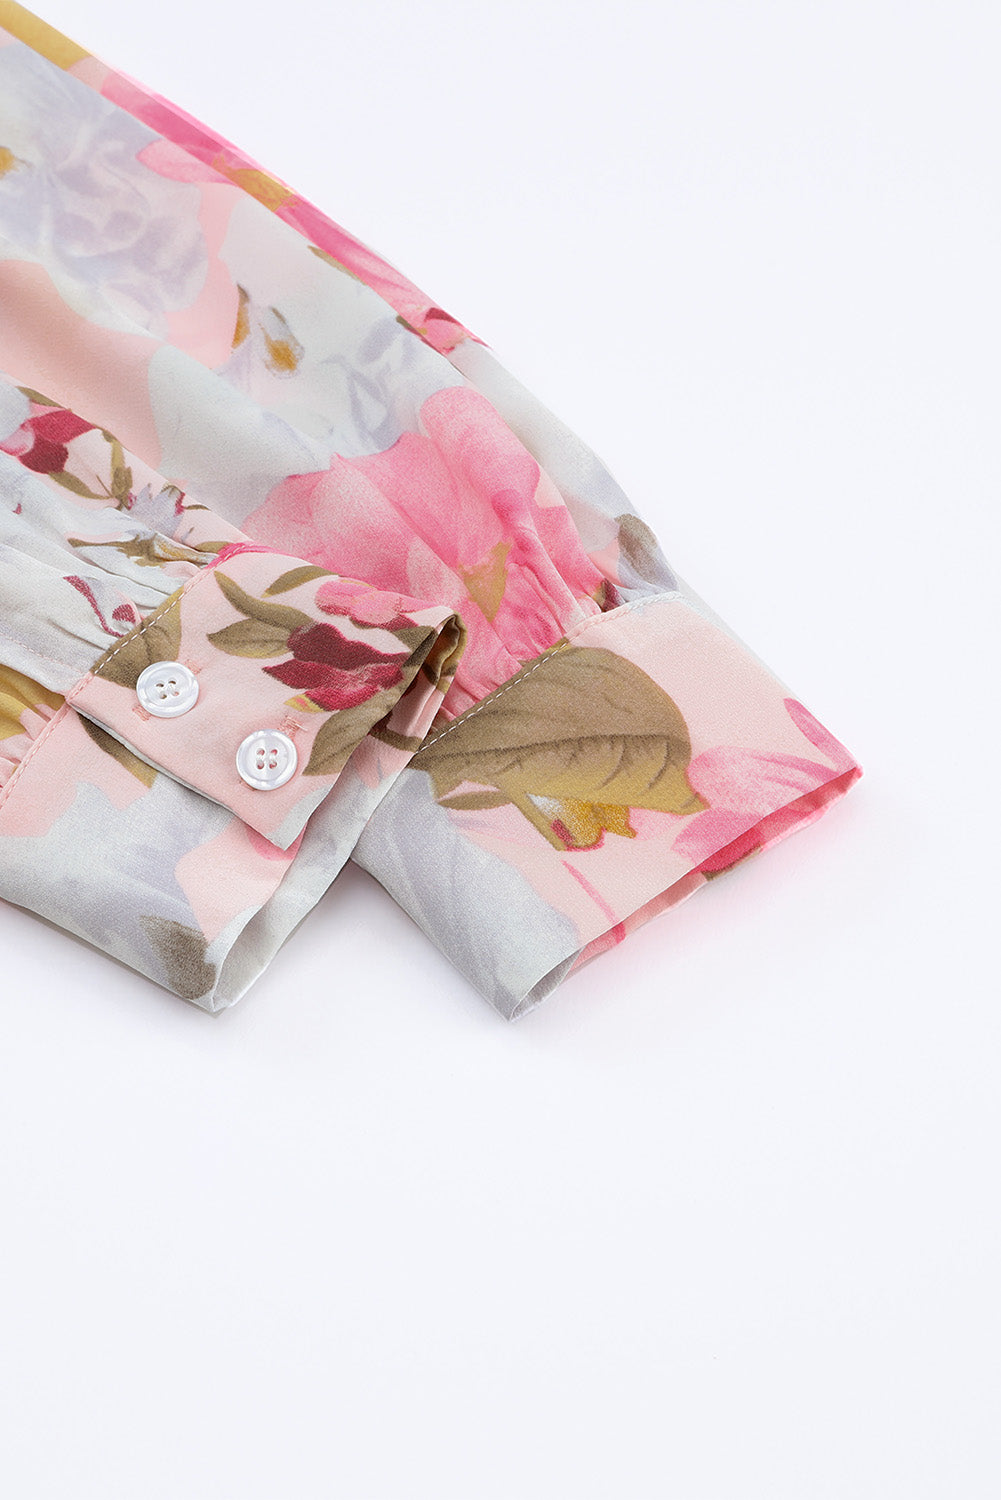 Rožnata srajca z napihnjenimi rokavi in ​​ovratnikom s cvetličnim motivom